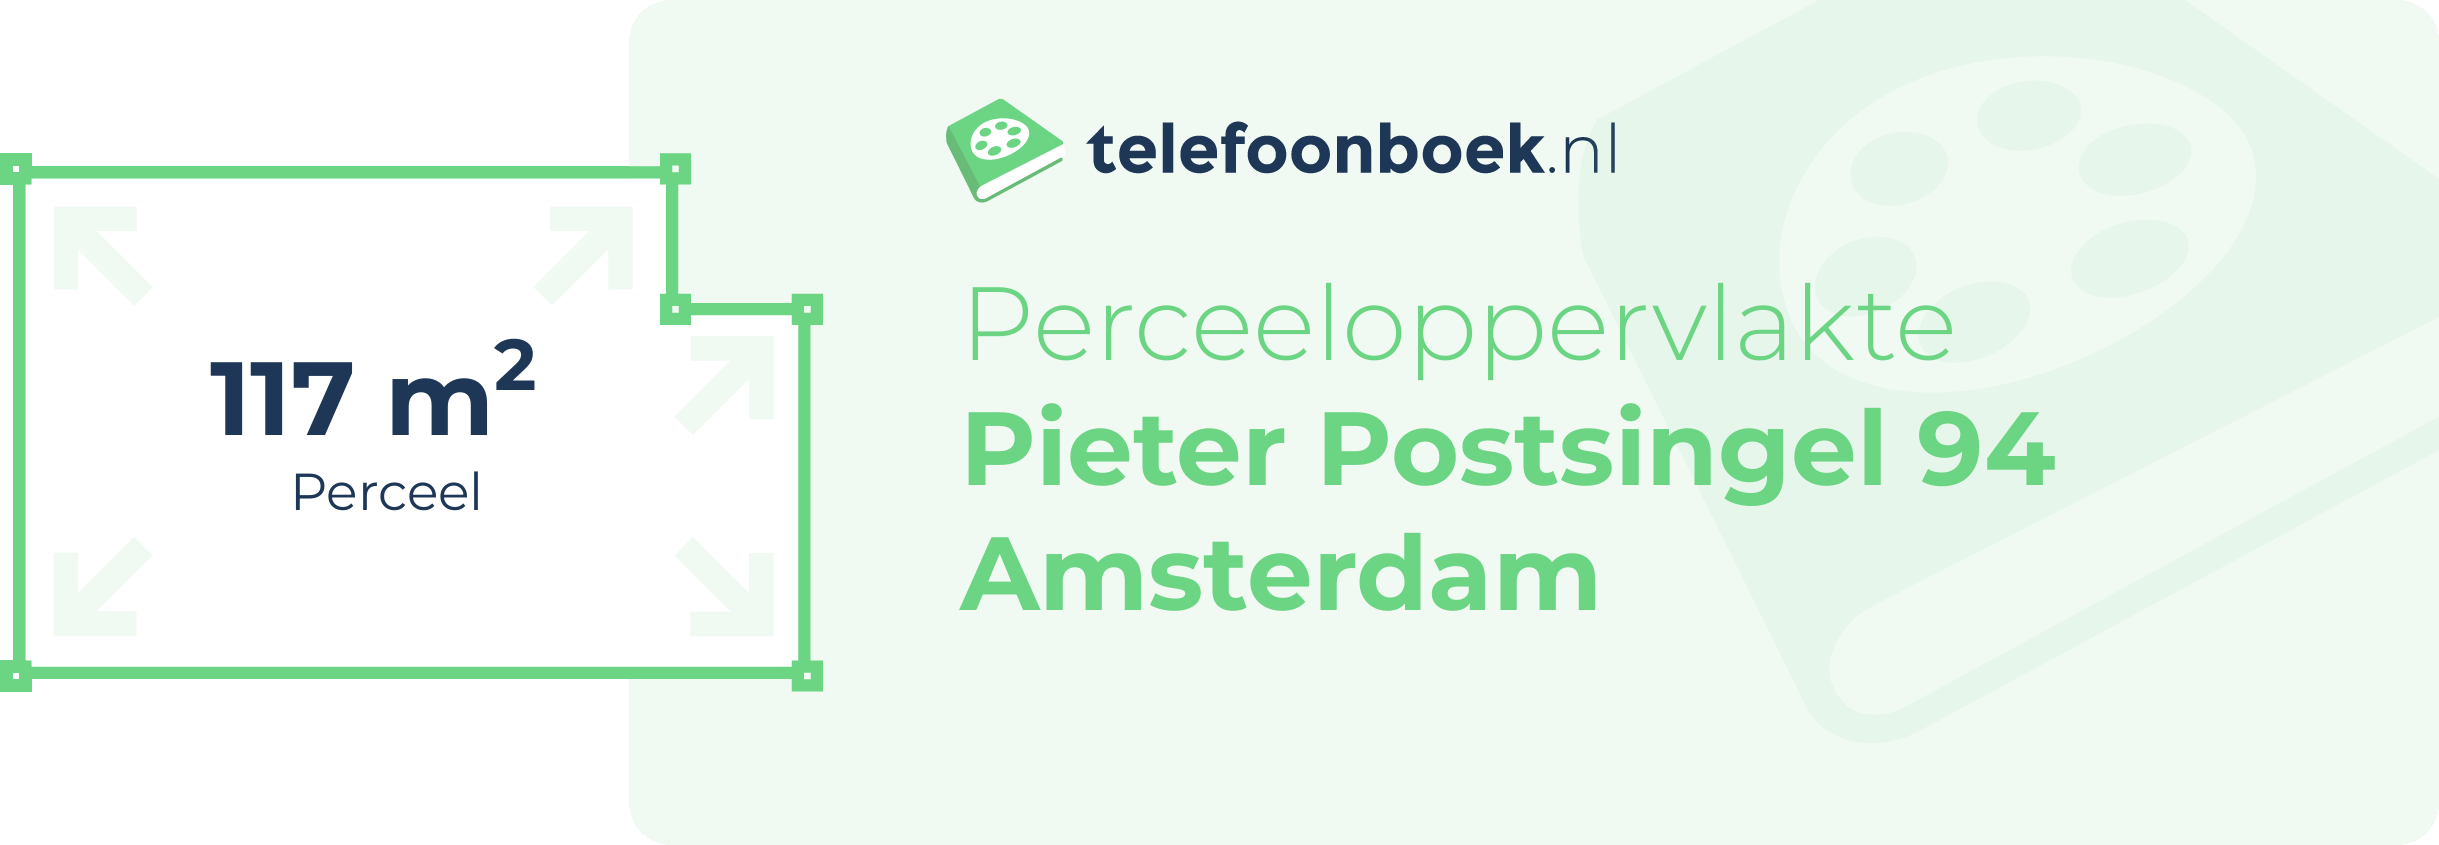 Perceeloppervlakte Pieter Postsingel 94 Amsterdam